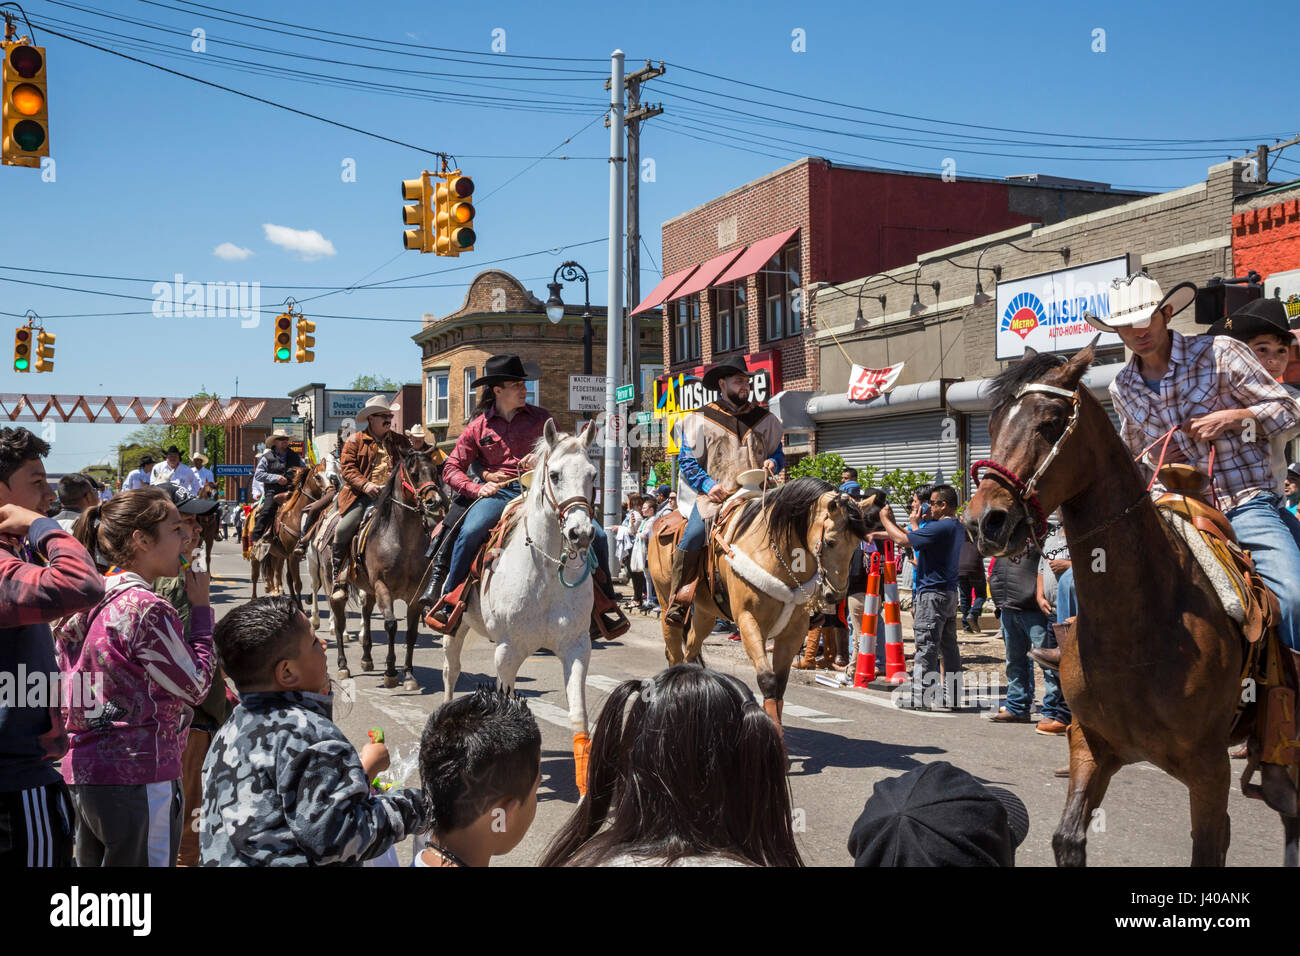 Detroit, Michigan - annuale di Cinco de Mayo parade nel quartiere Mexican-American del sud-ovest di Detroit. Foto Stock